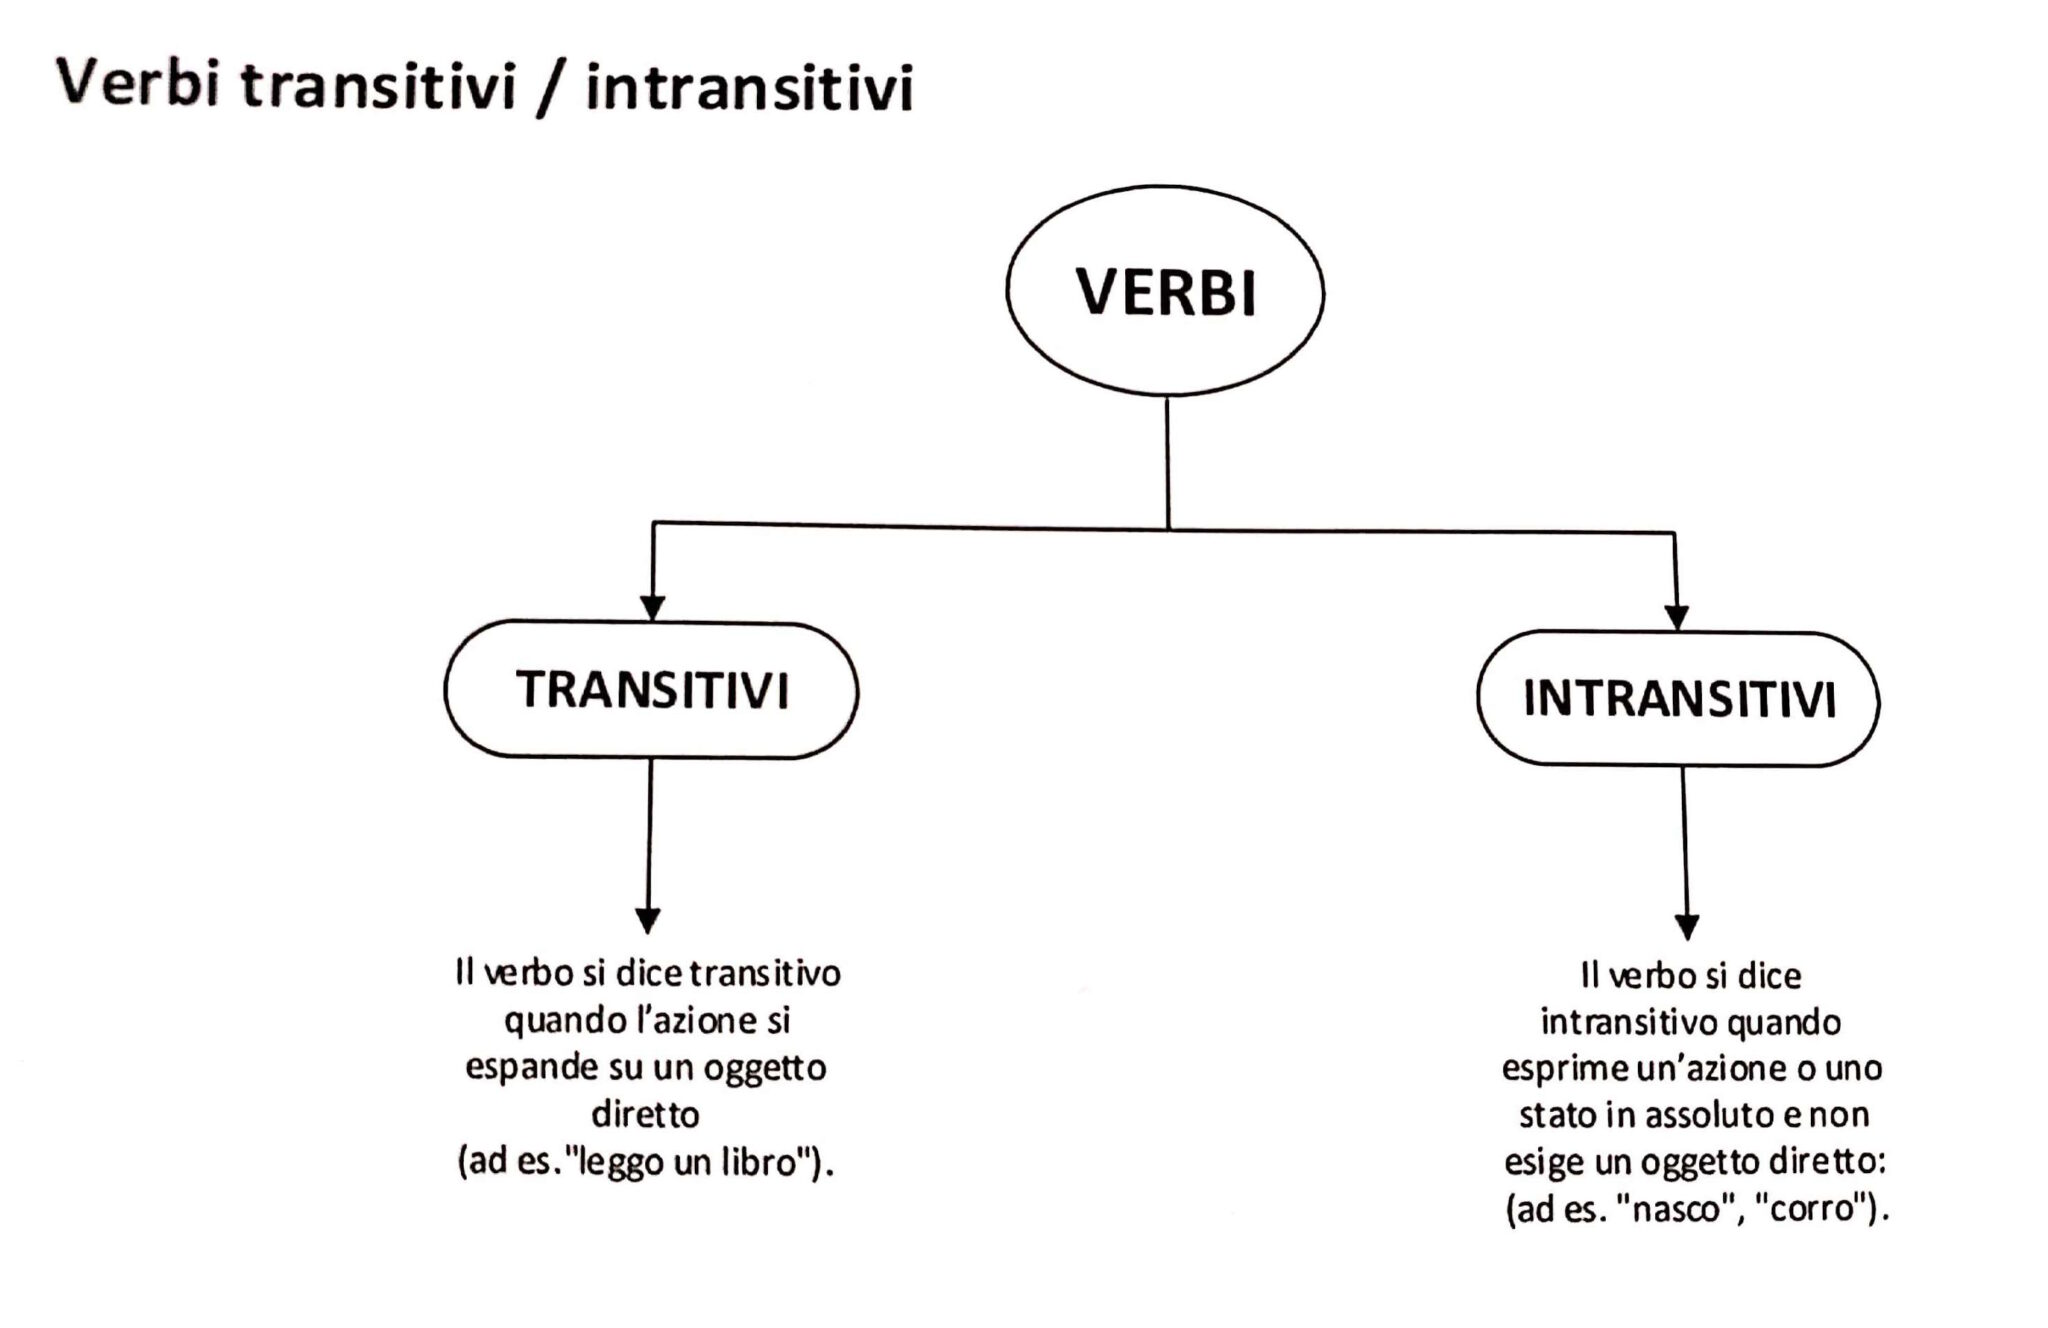 Diferencias entre verbos transitivos e intransitivos